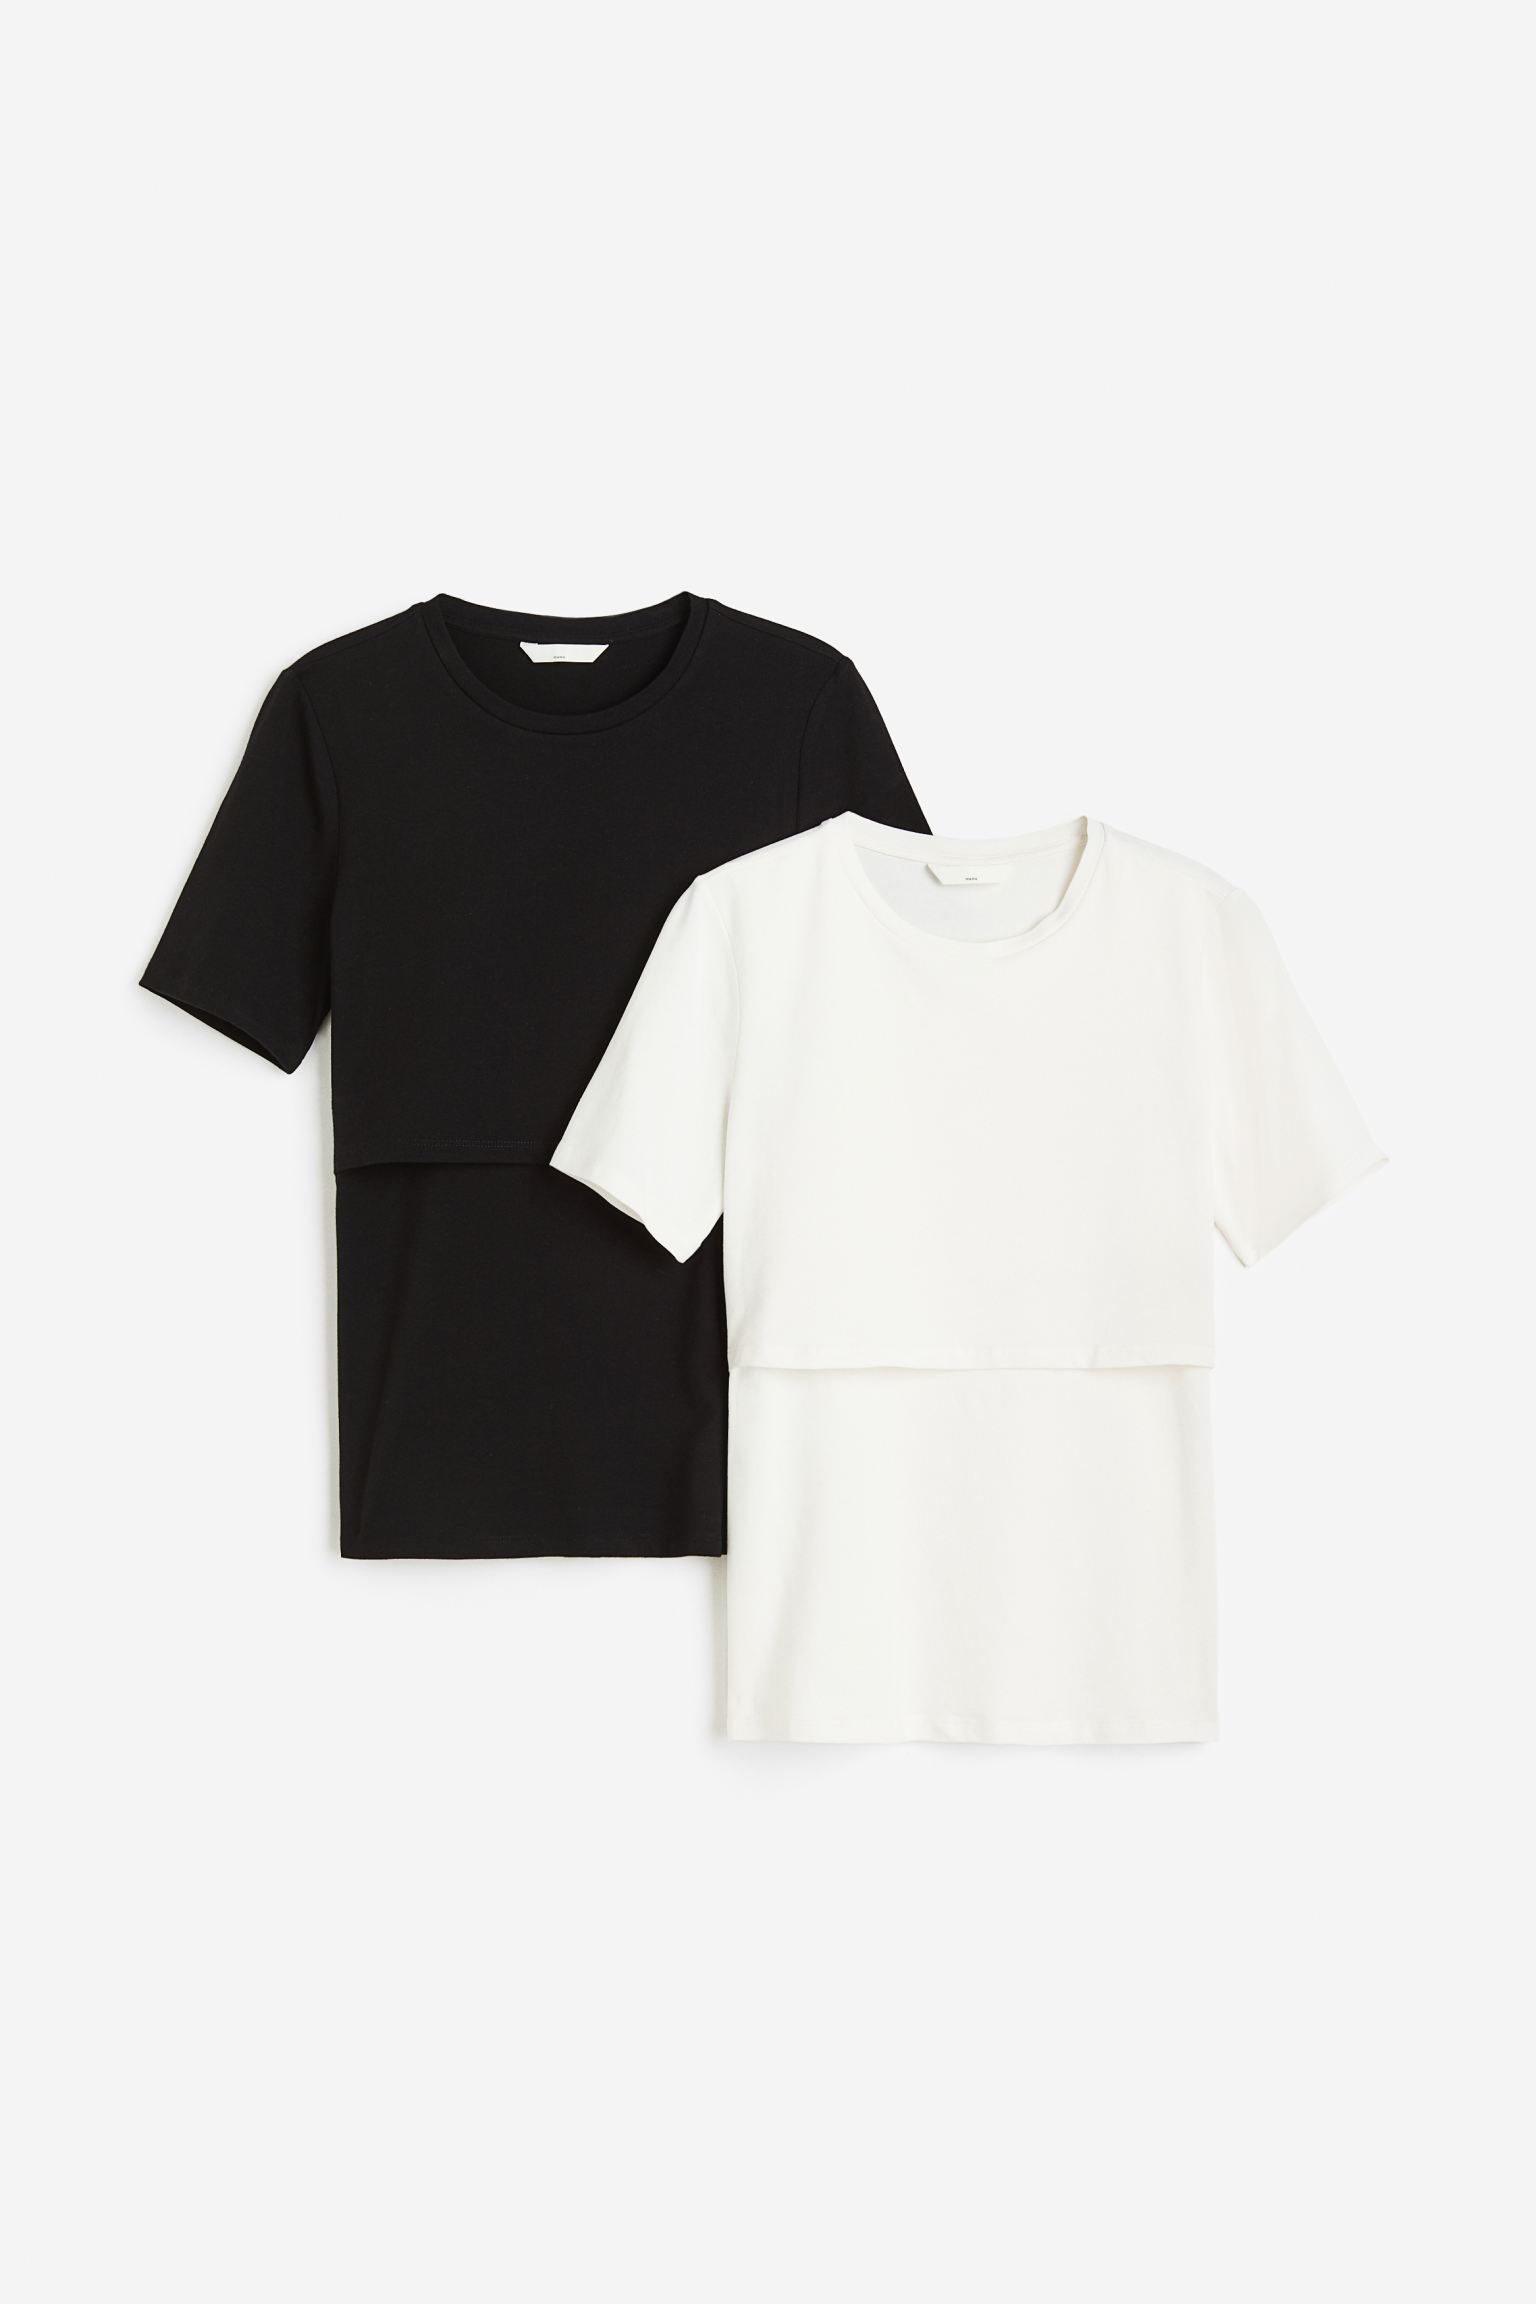 Комплект футболок женских H&M 1175052002 черных 2XL (доставка из-за рубежа)